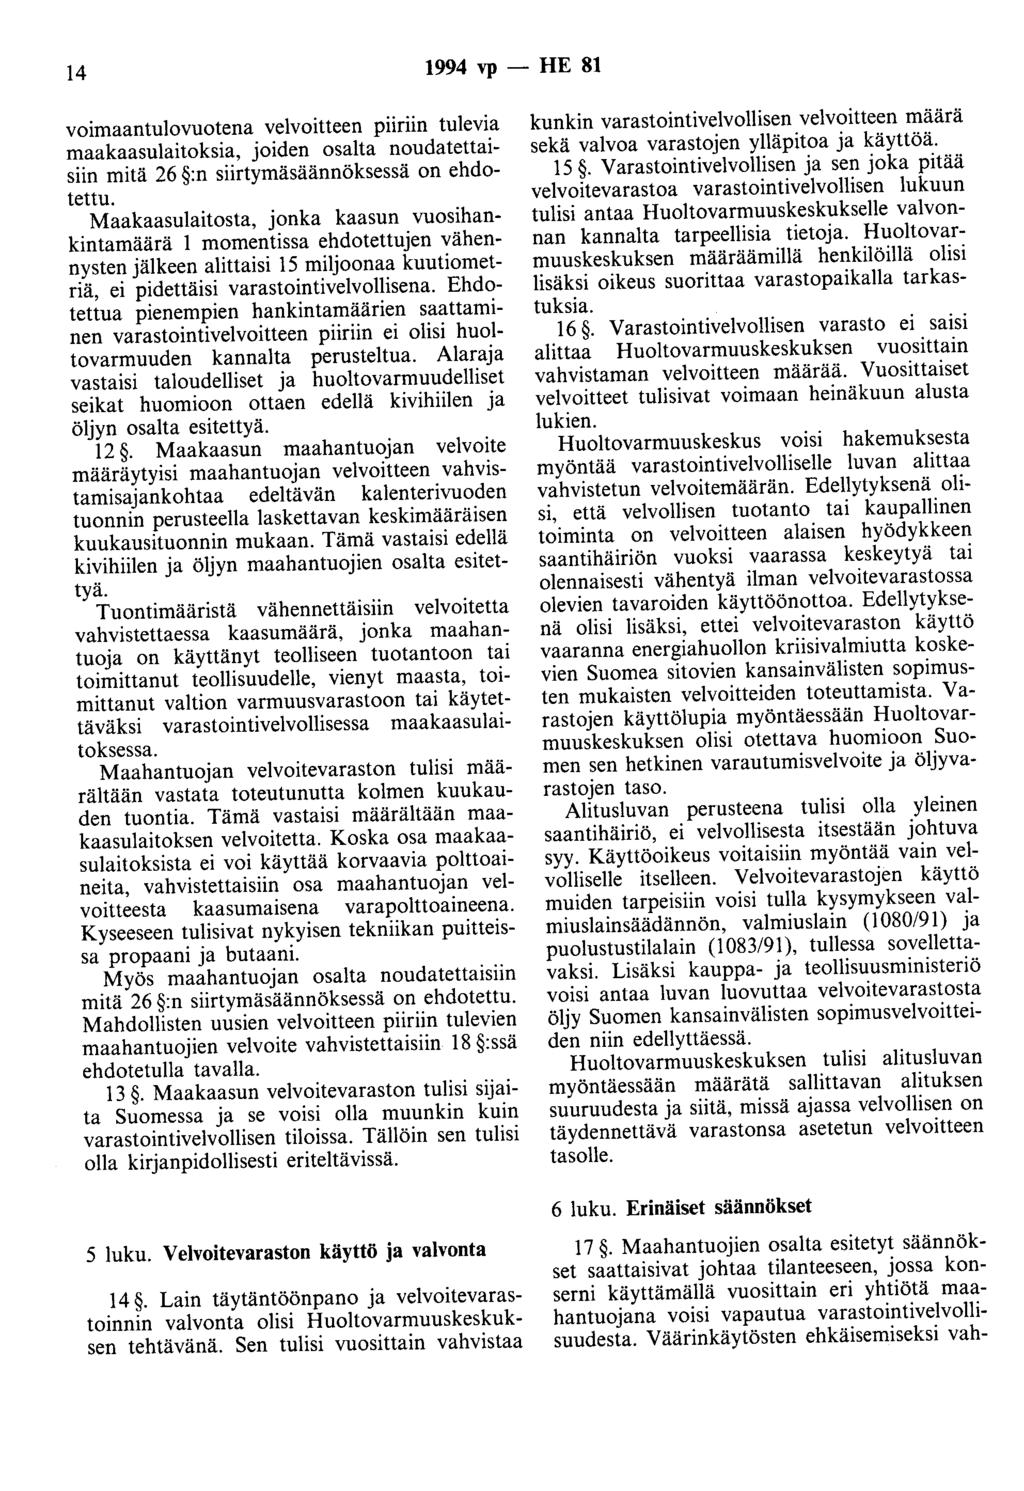 14 1994 vp - HE 81 voimaantulovuotena velvoitteen piiriin tulevia maakaasulaitoksia, joiden osalta noudatettaisiin mitä 26 :n siirtymäsäännöksessä on ehdotettu.